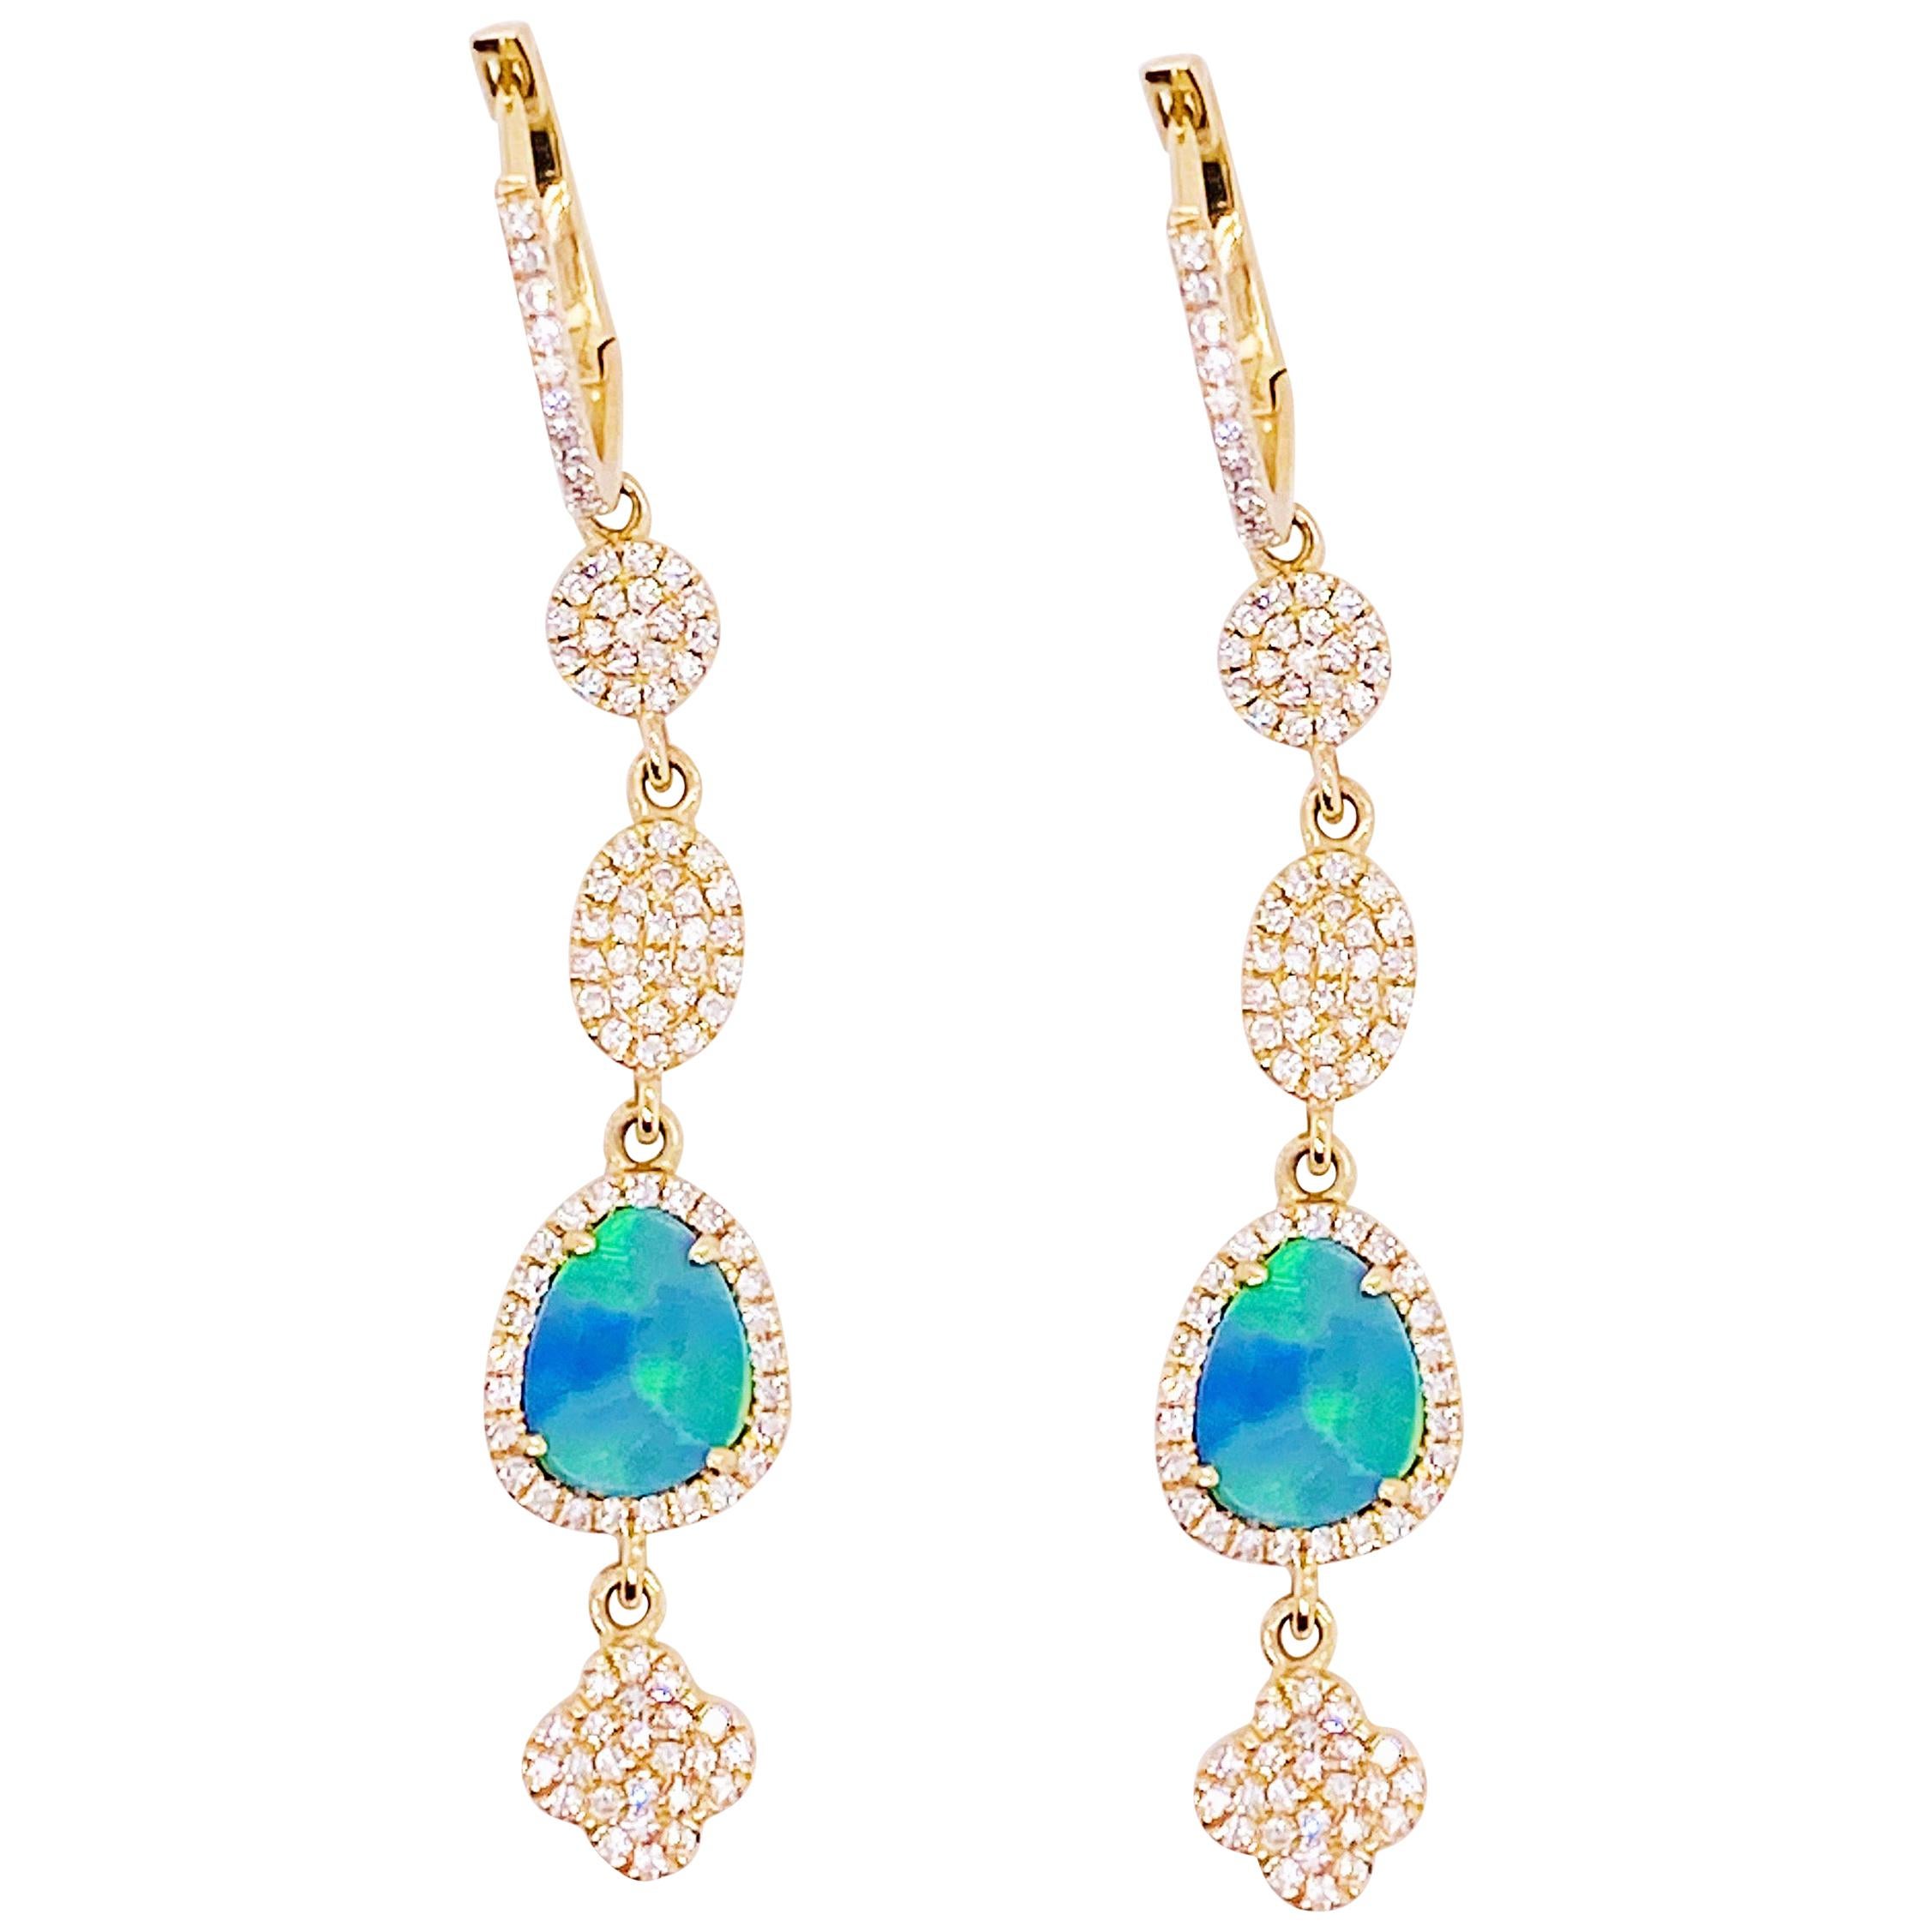 Diamond & Opal Earring Dangles 14 Karat Gold 2.25 Carat Opal & Diamond Earrings For Sale